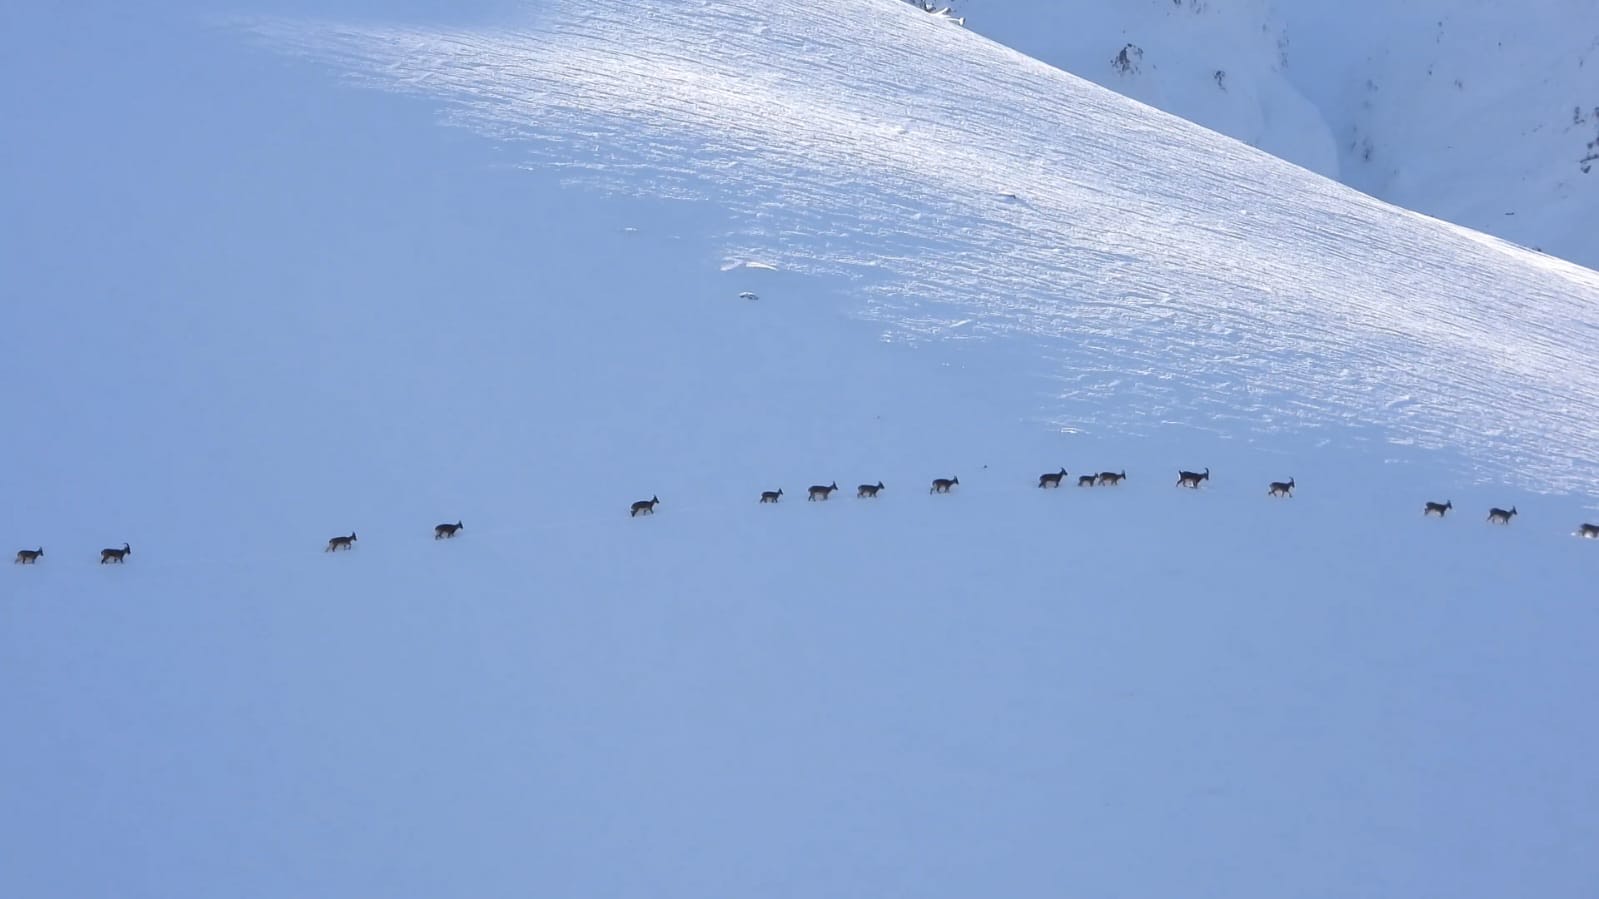 Karlı arazide yiyecek arayan çengel boynuzlu dağ keçileri görüntülendi